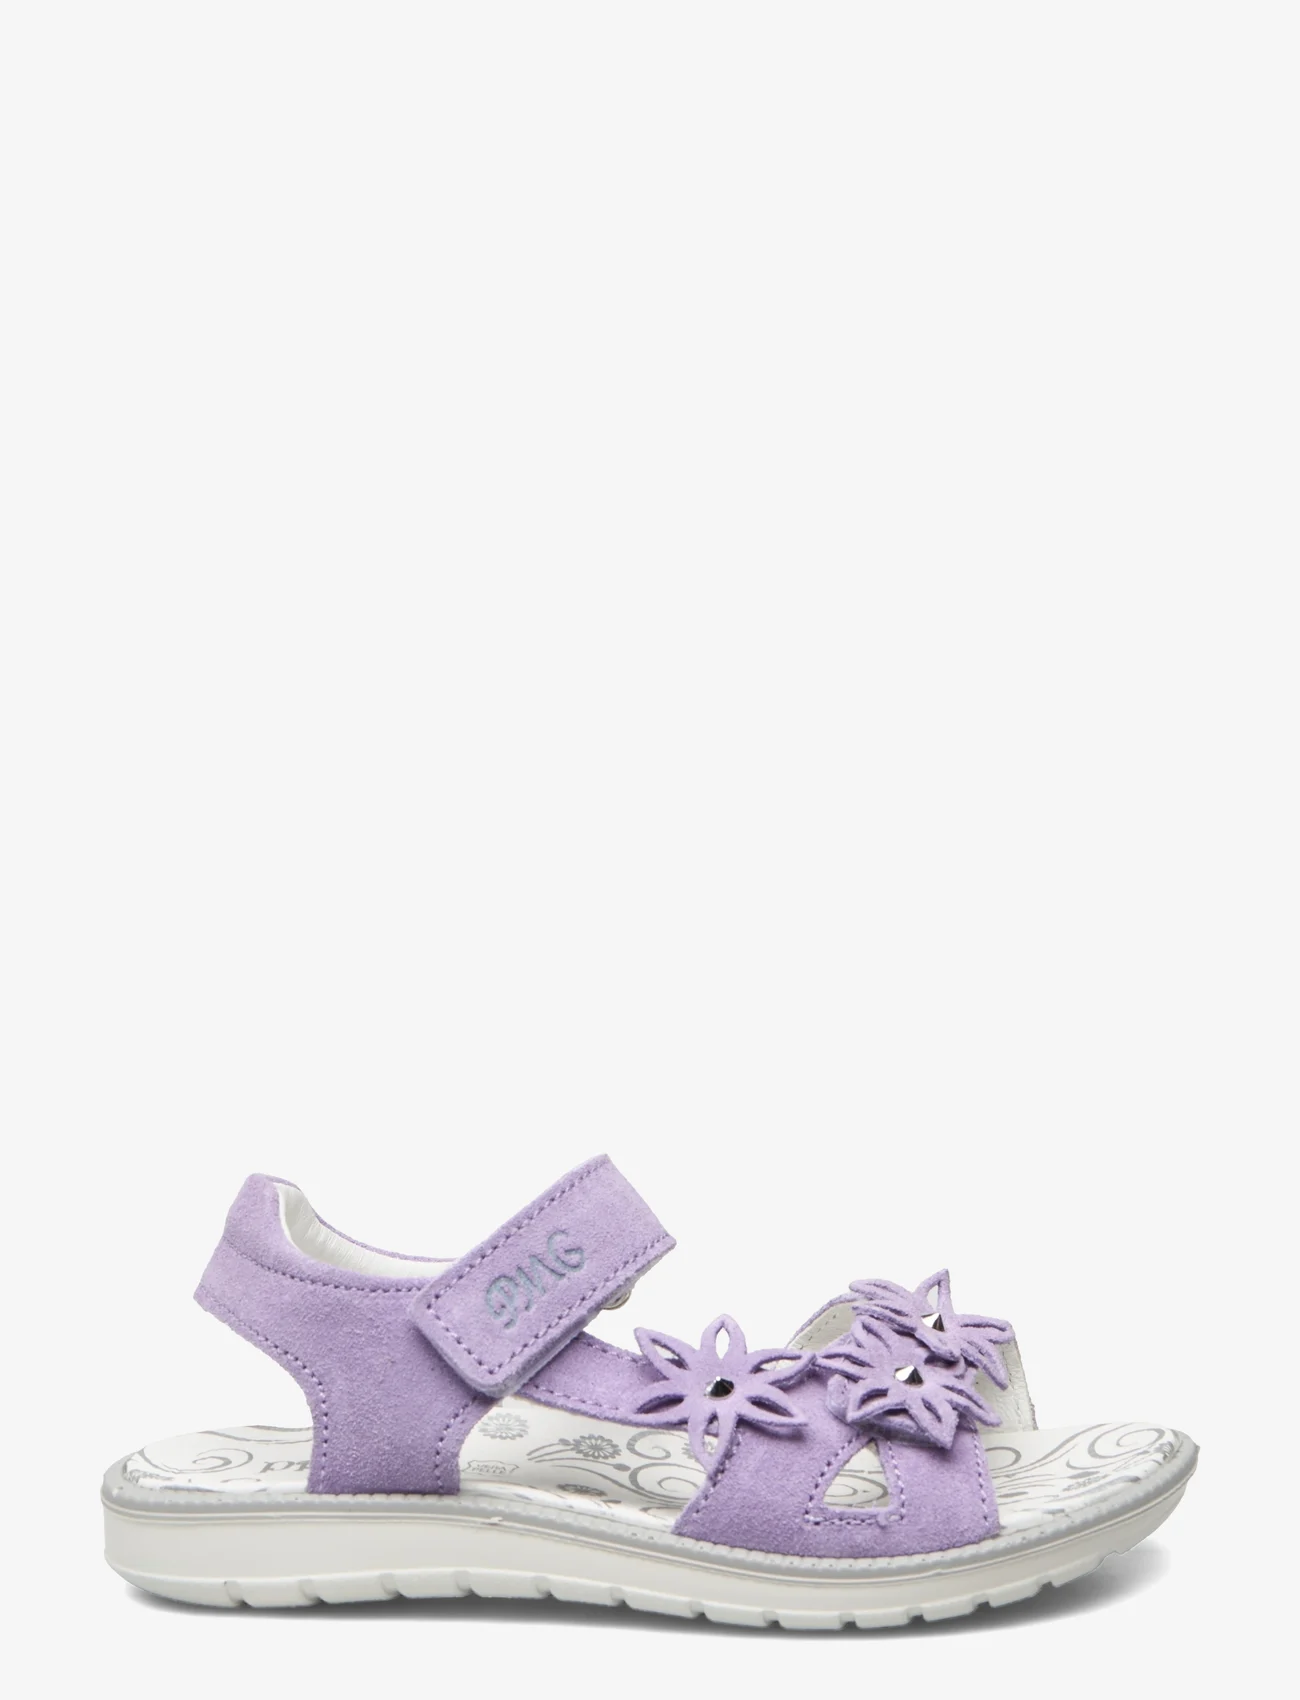 Primigi - PAL 38840 - sandals - purple - 1